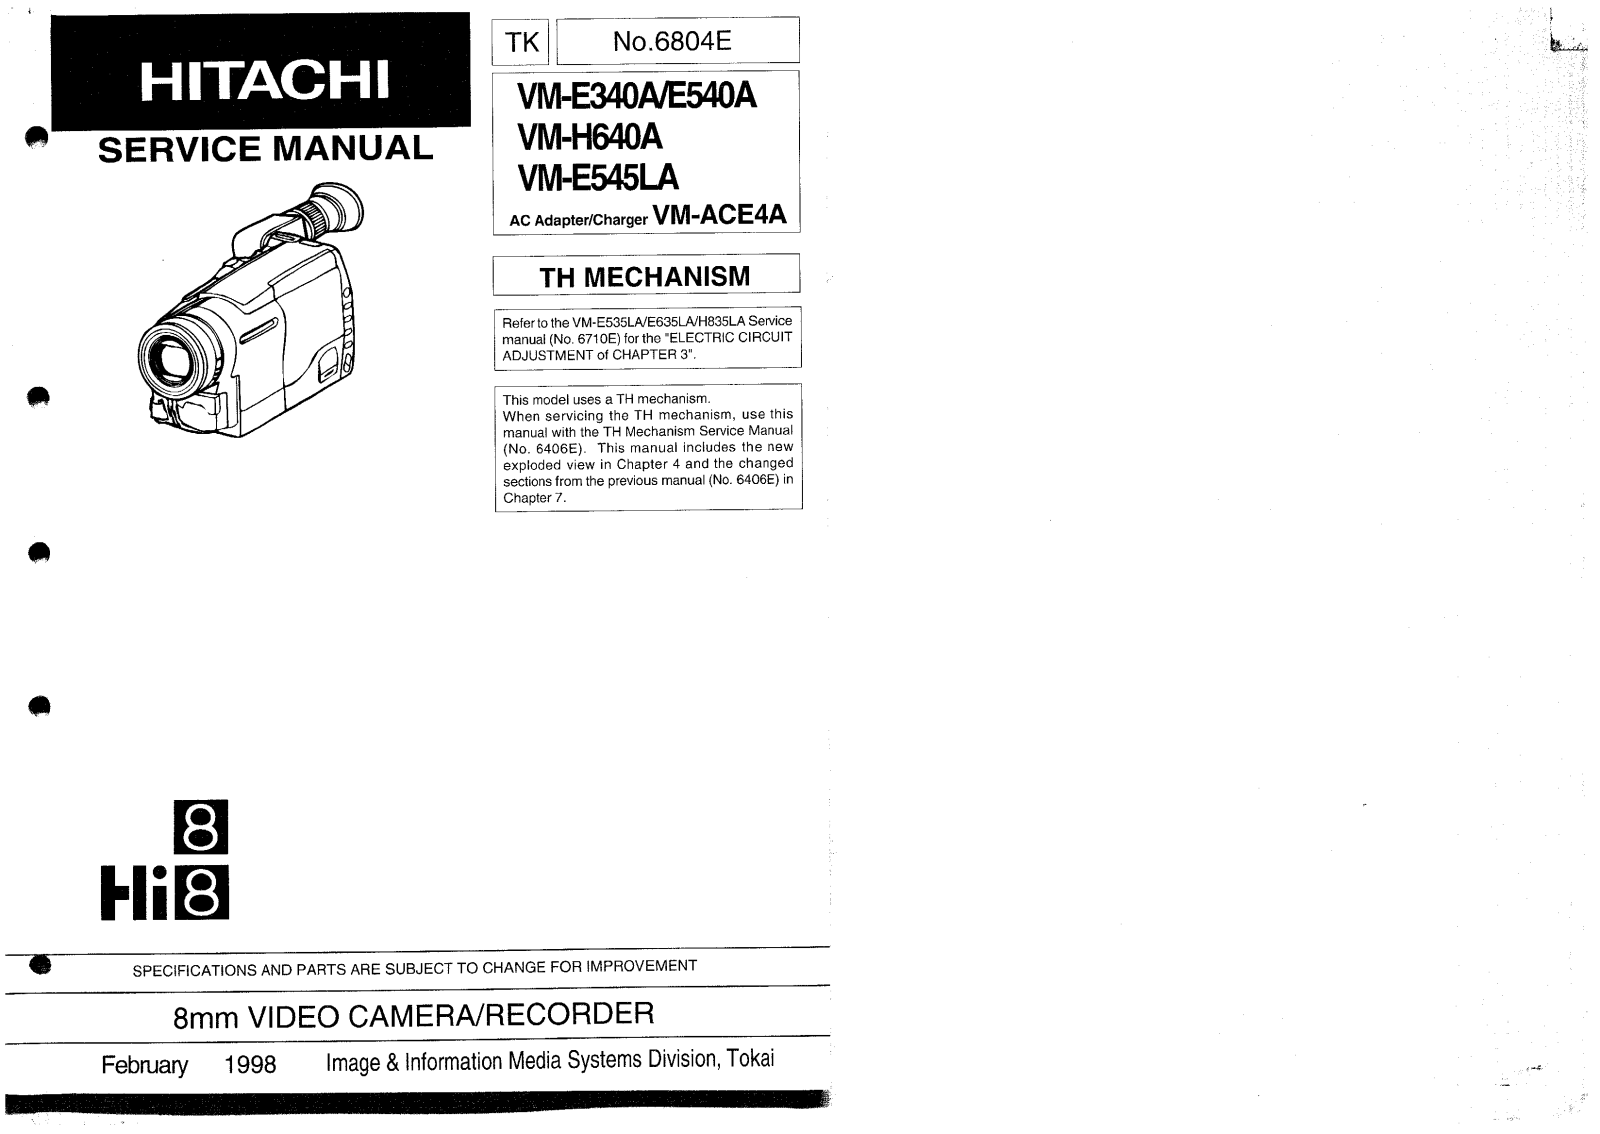 Hitachi VM-E340A, VM-E540, VM-E640, VM-E545 Service Manual